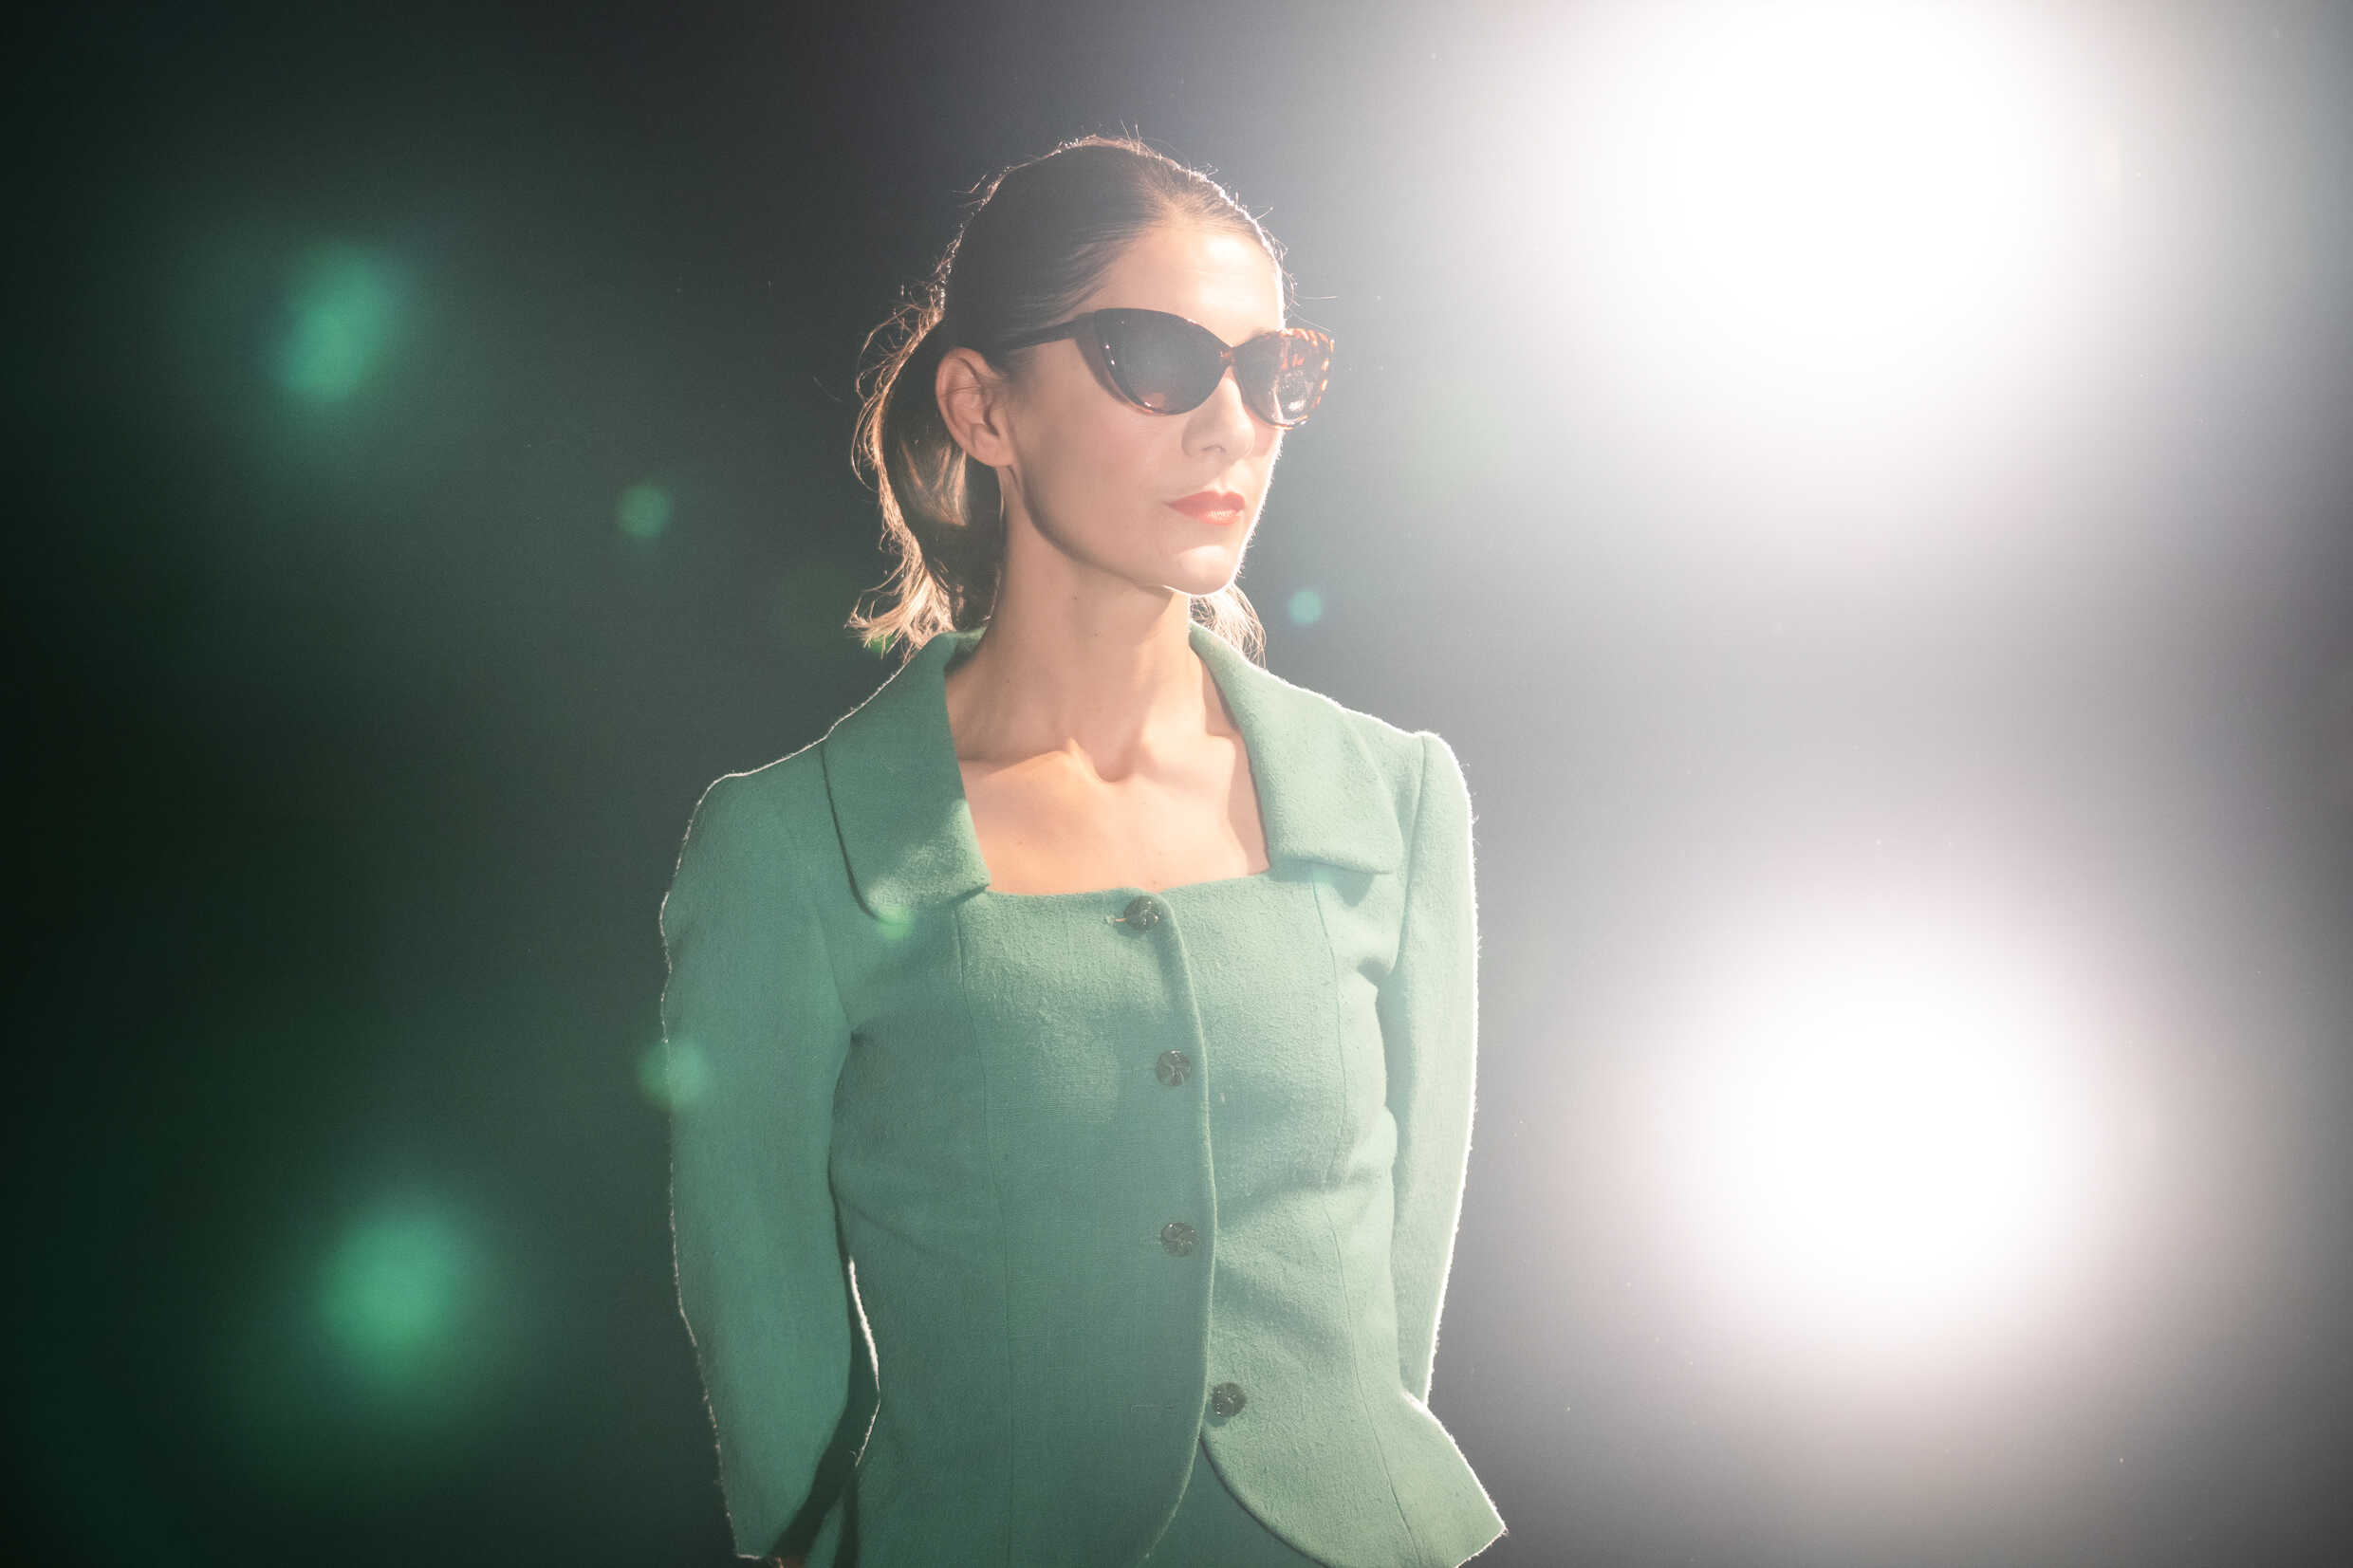 En kvinna i grön dräkt och solglasögon står på en upplyst scen. 